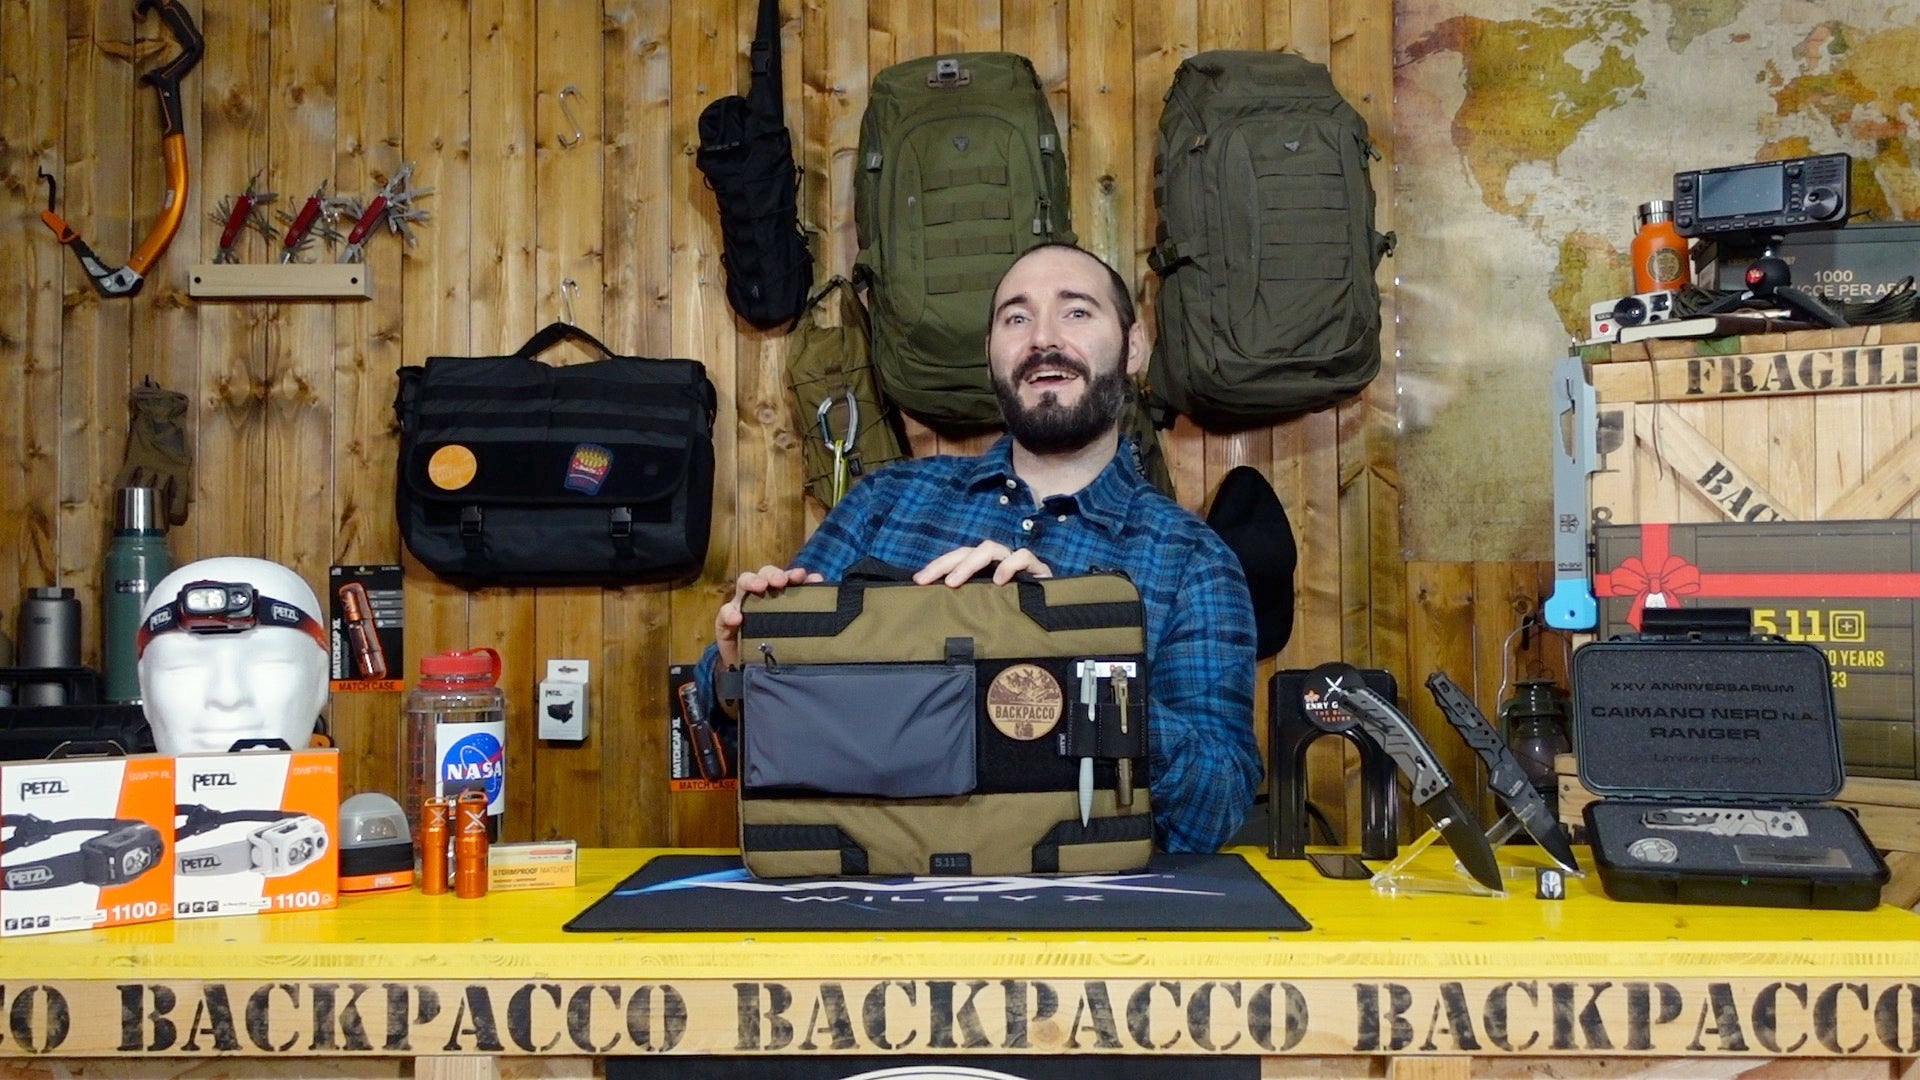 Paolo di Backpacco spiega il rapid laptop case di 5.11